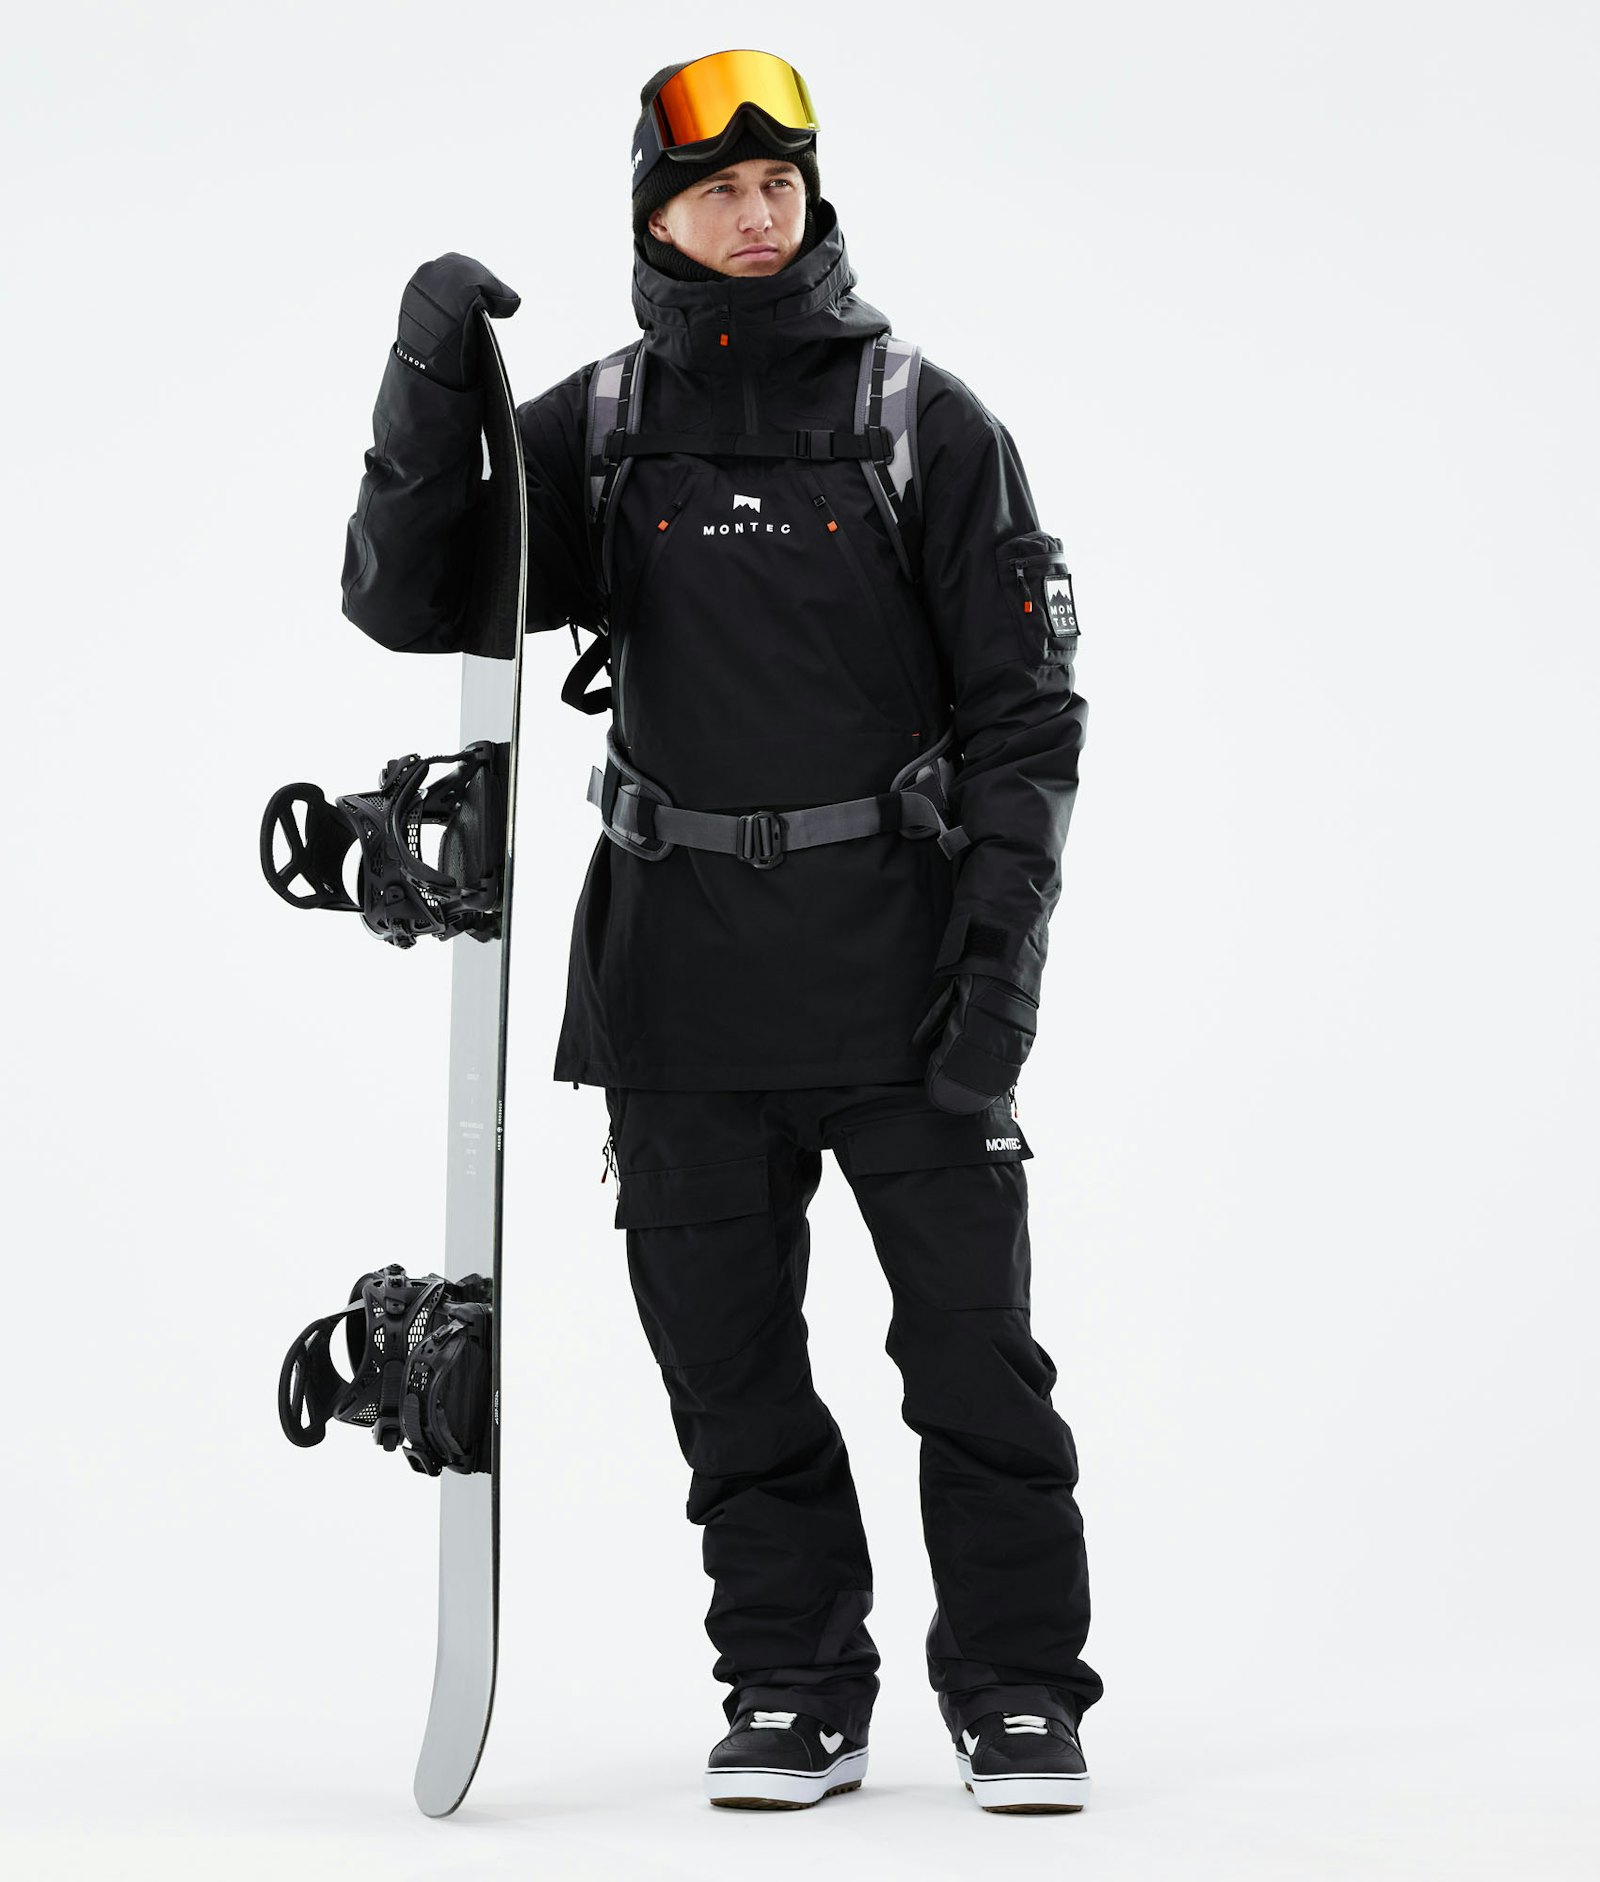 Montec Anzu Snowboard Jacket Men Black